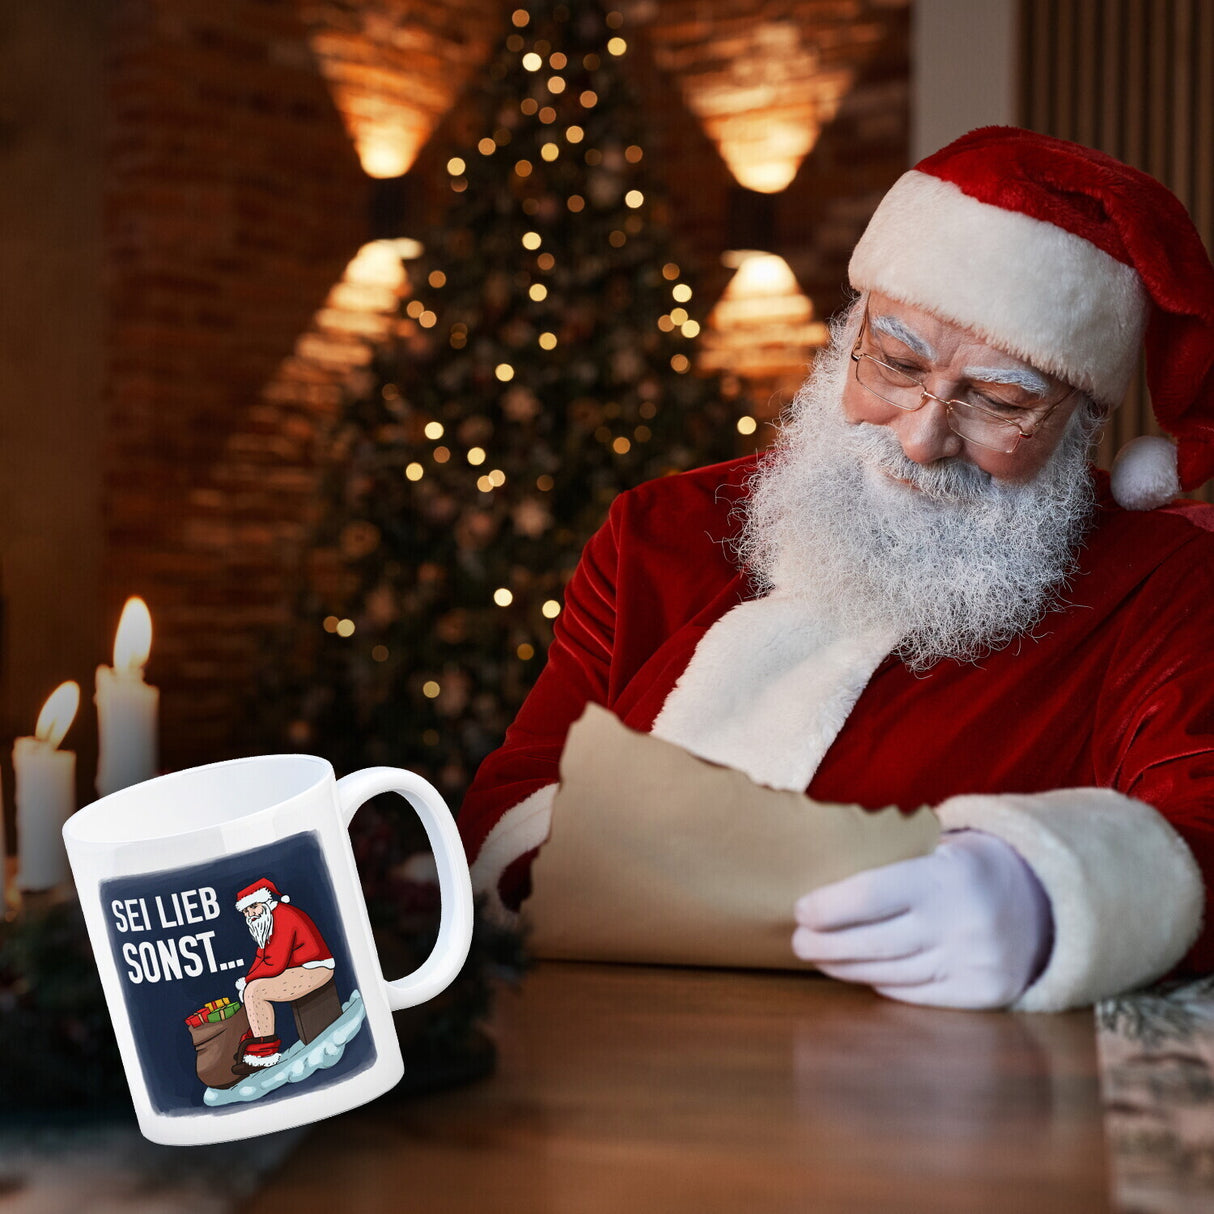 Sei lieb sonst… frecher Weihnachtsmann Kaffeebecher